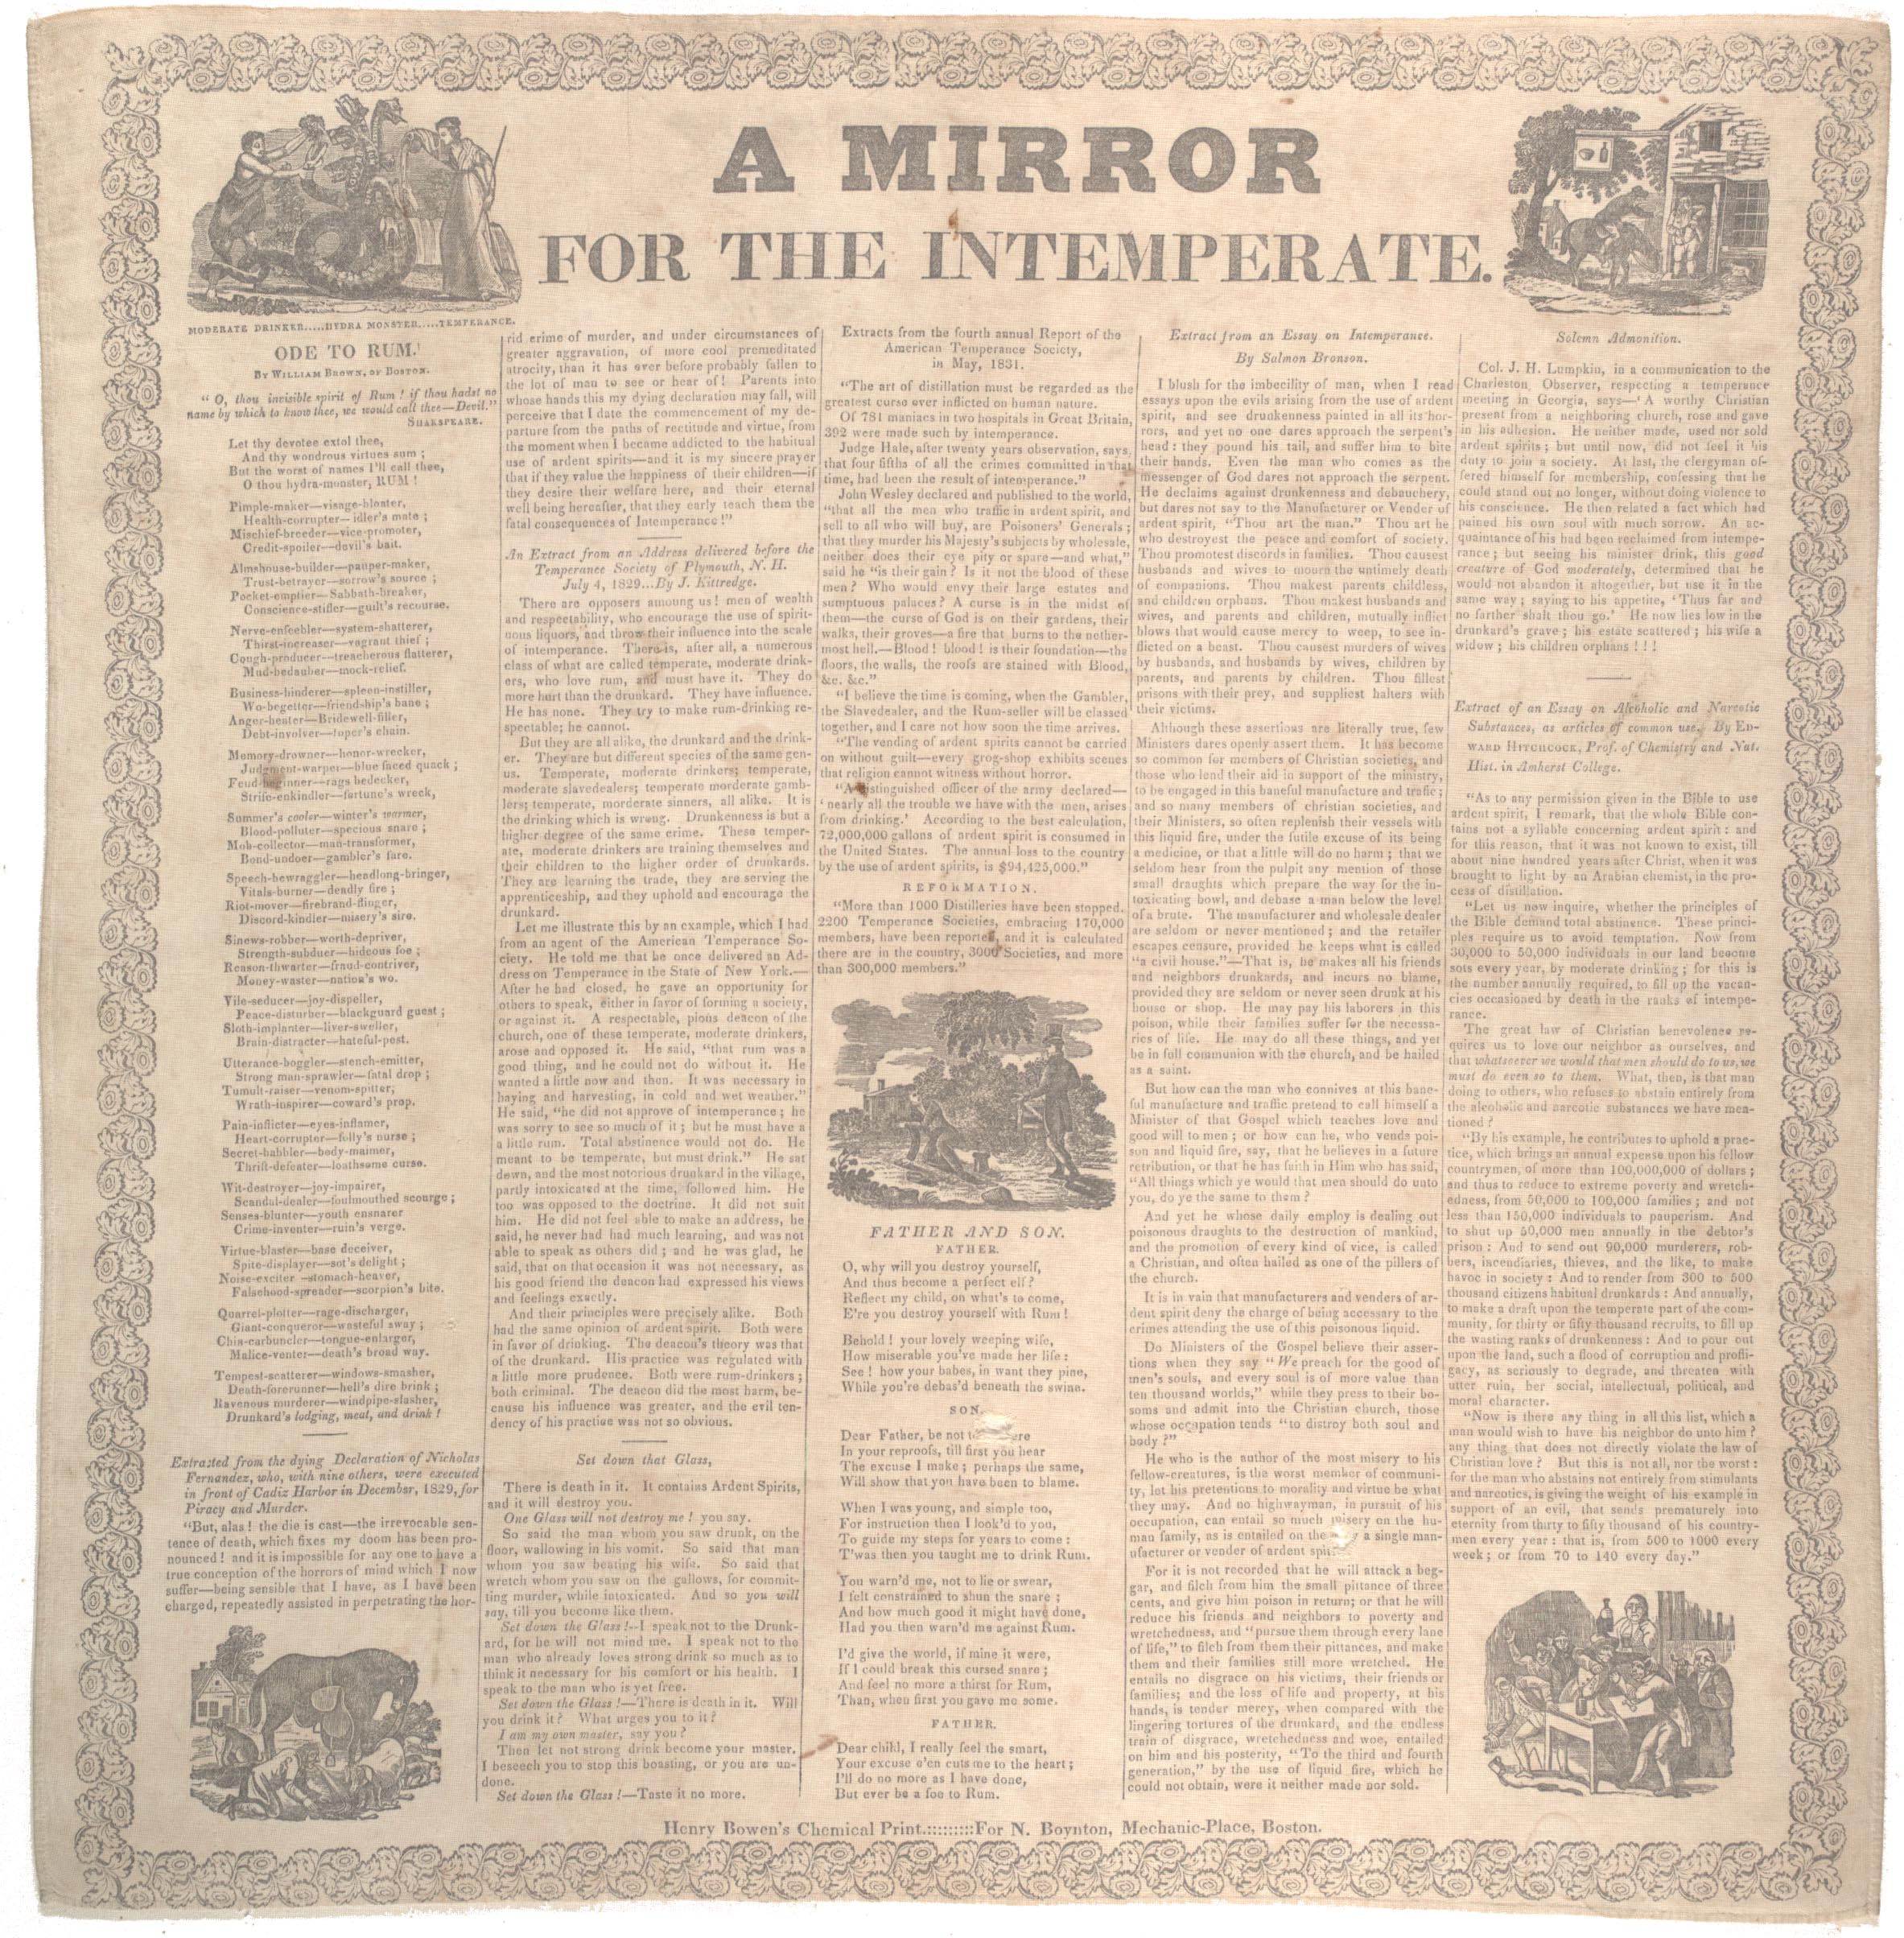 “A mirror for the intemperate” broadside, Boston, [1830]. (Gilder Lehrman Collection, GLC08600)